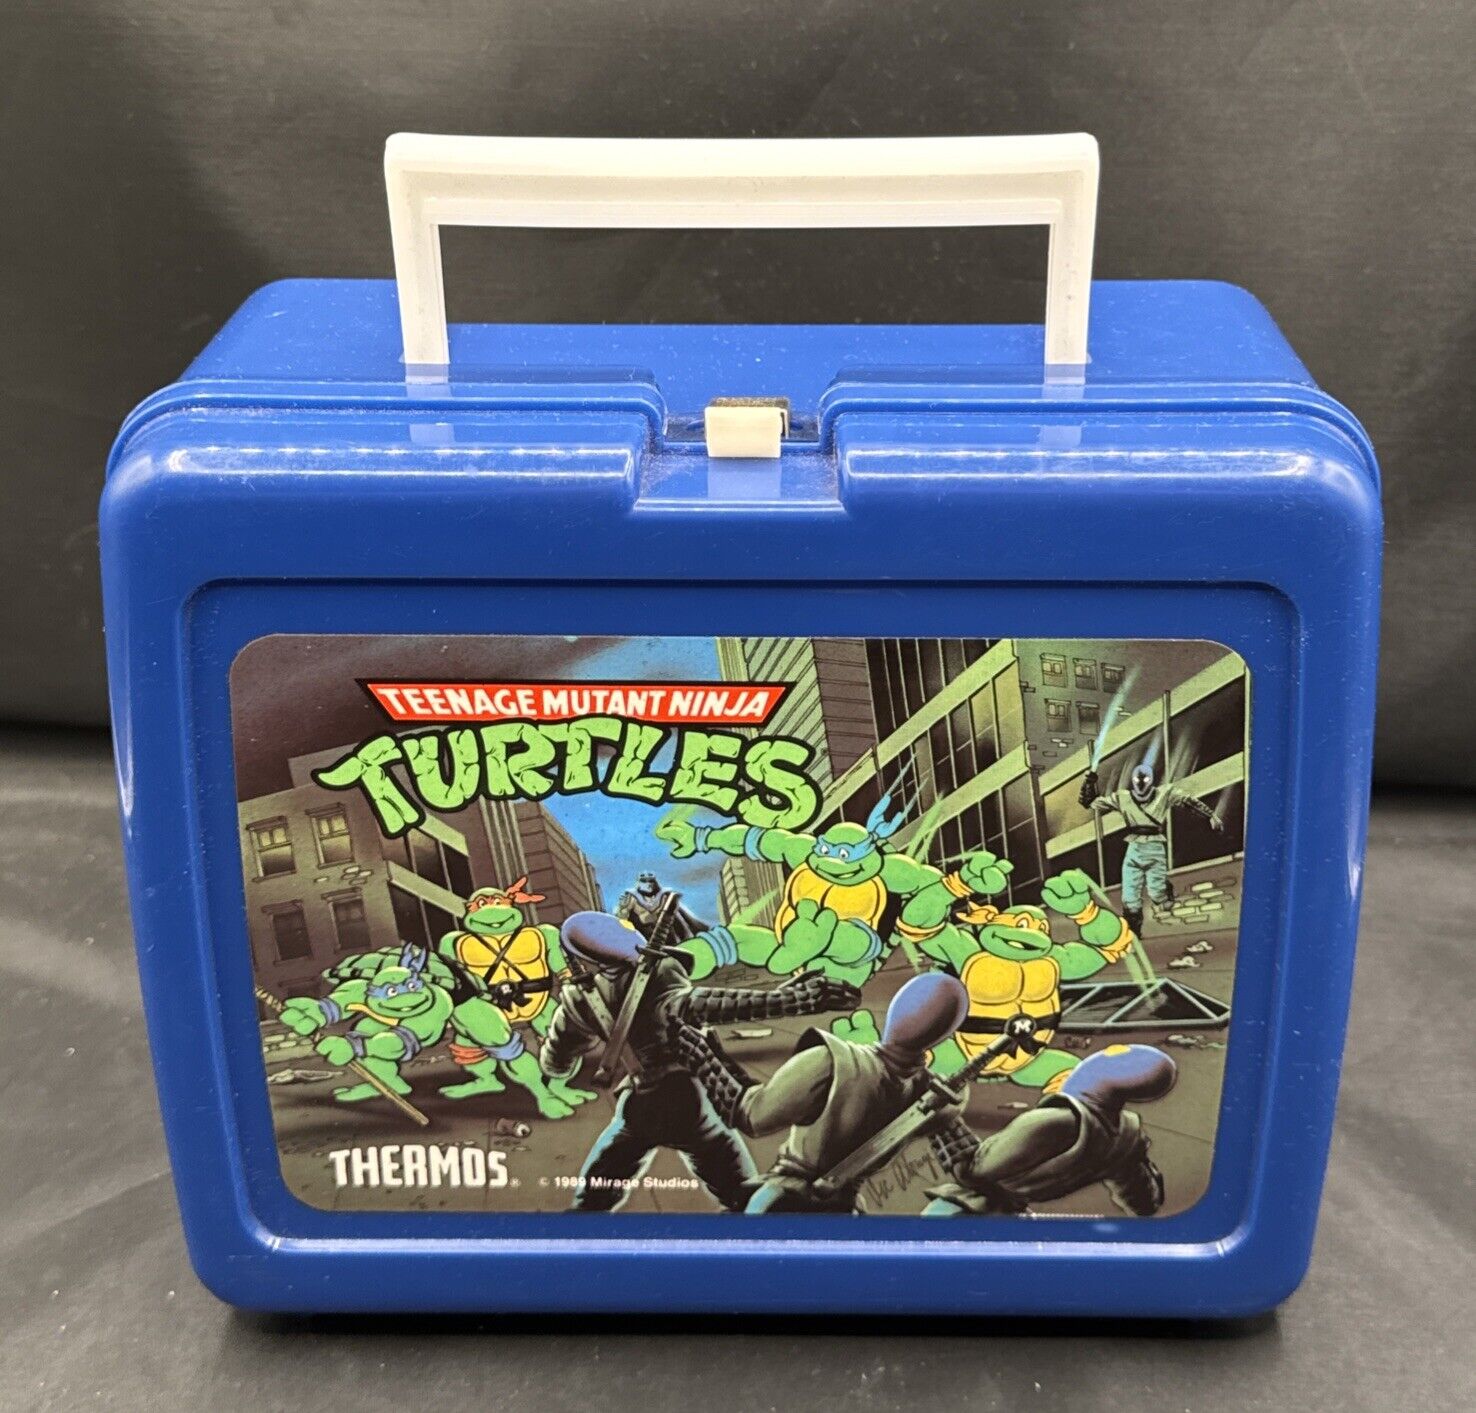 Vintage 1989 Teenage Mutant Ninja Turtles Blue Lunch Box & Thermos Plastic TMNT